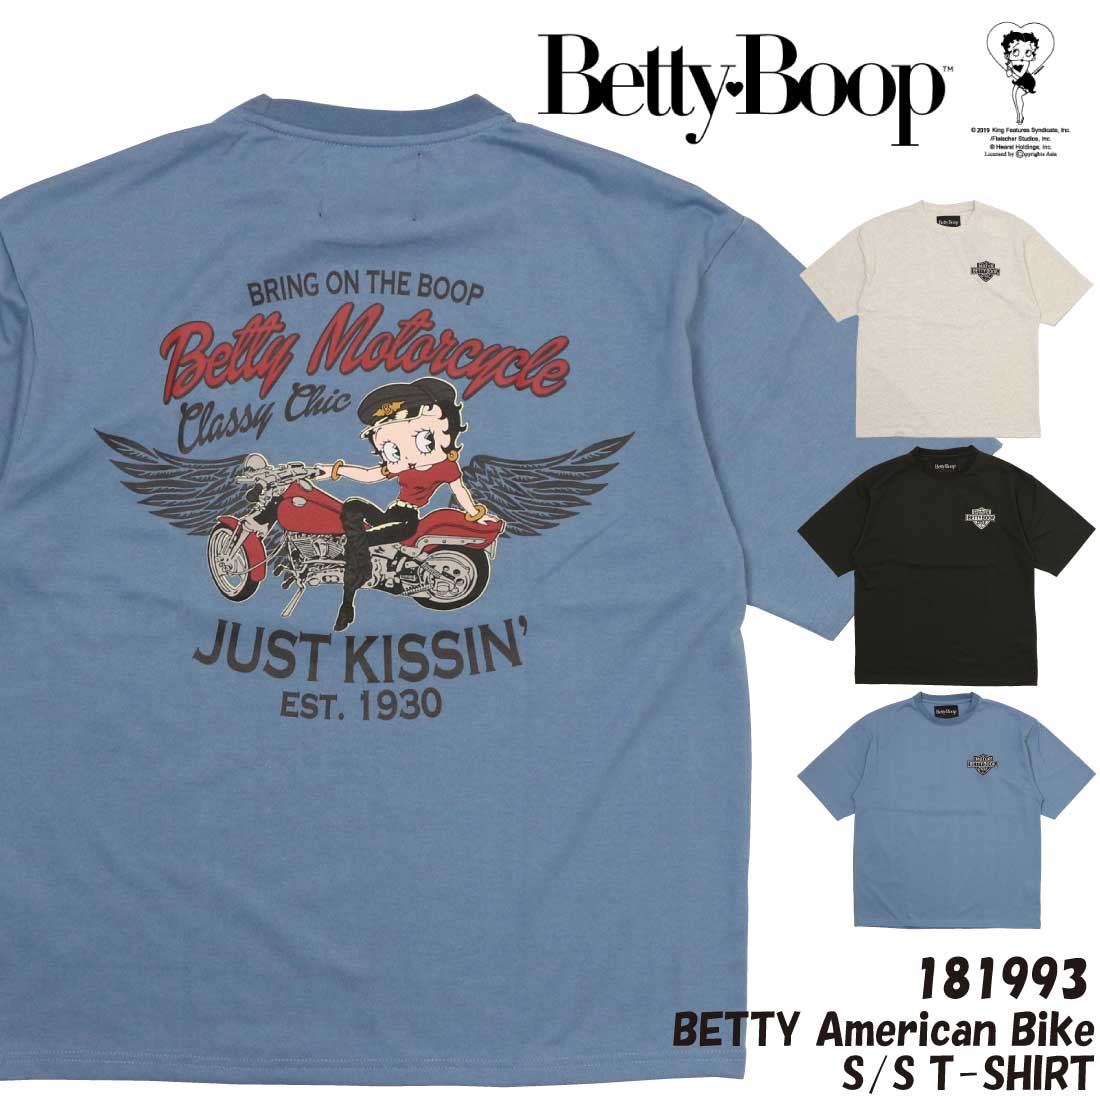 メール便 発送 BettyBoop ベティー ブープ 半袖 Tシャツ 181993 アメリカン バイク ベティ 刺繍 プリント ロゴ ゆったりシルエット メンズ ベティちゃん